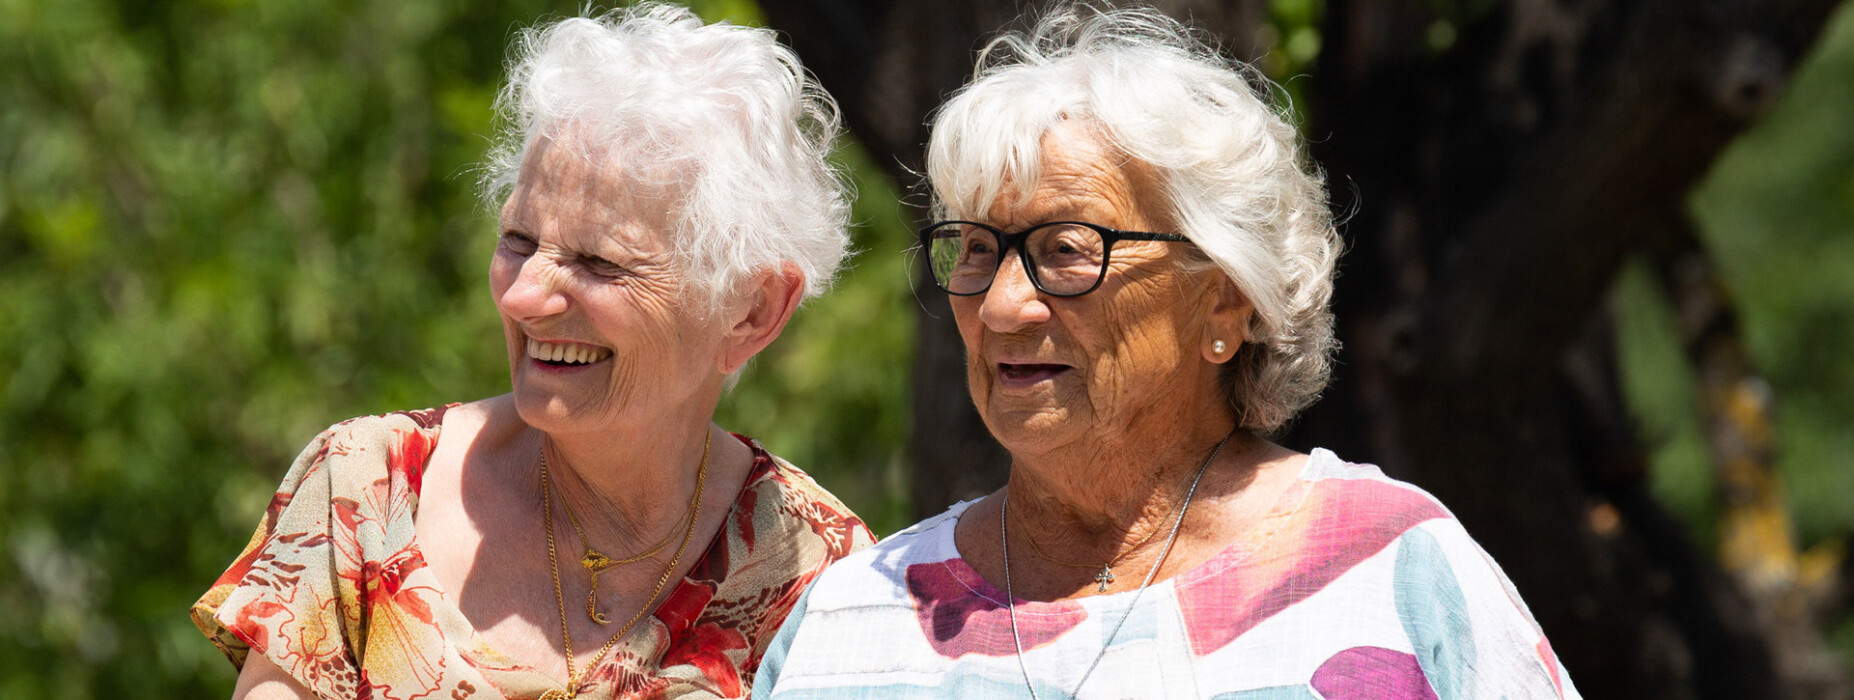 femmes-seniors-residentes-domitys.jpg